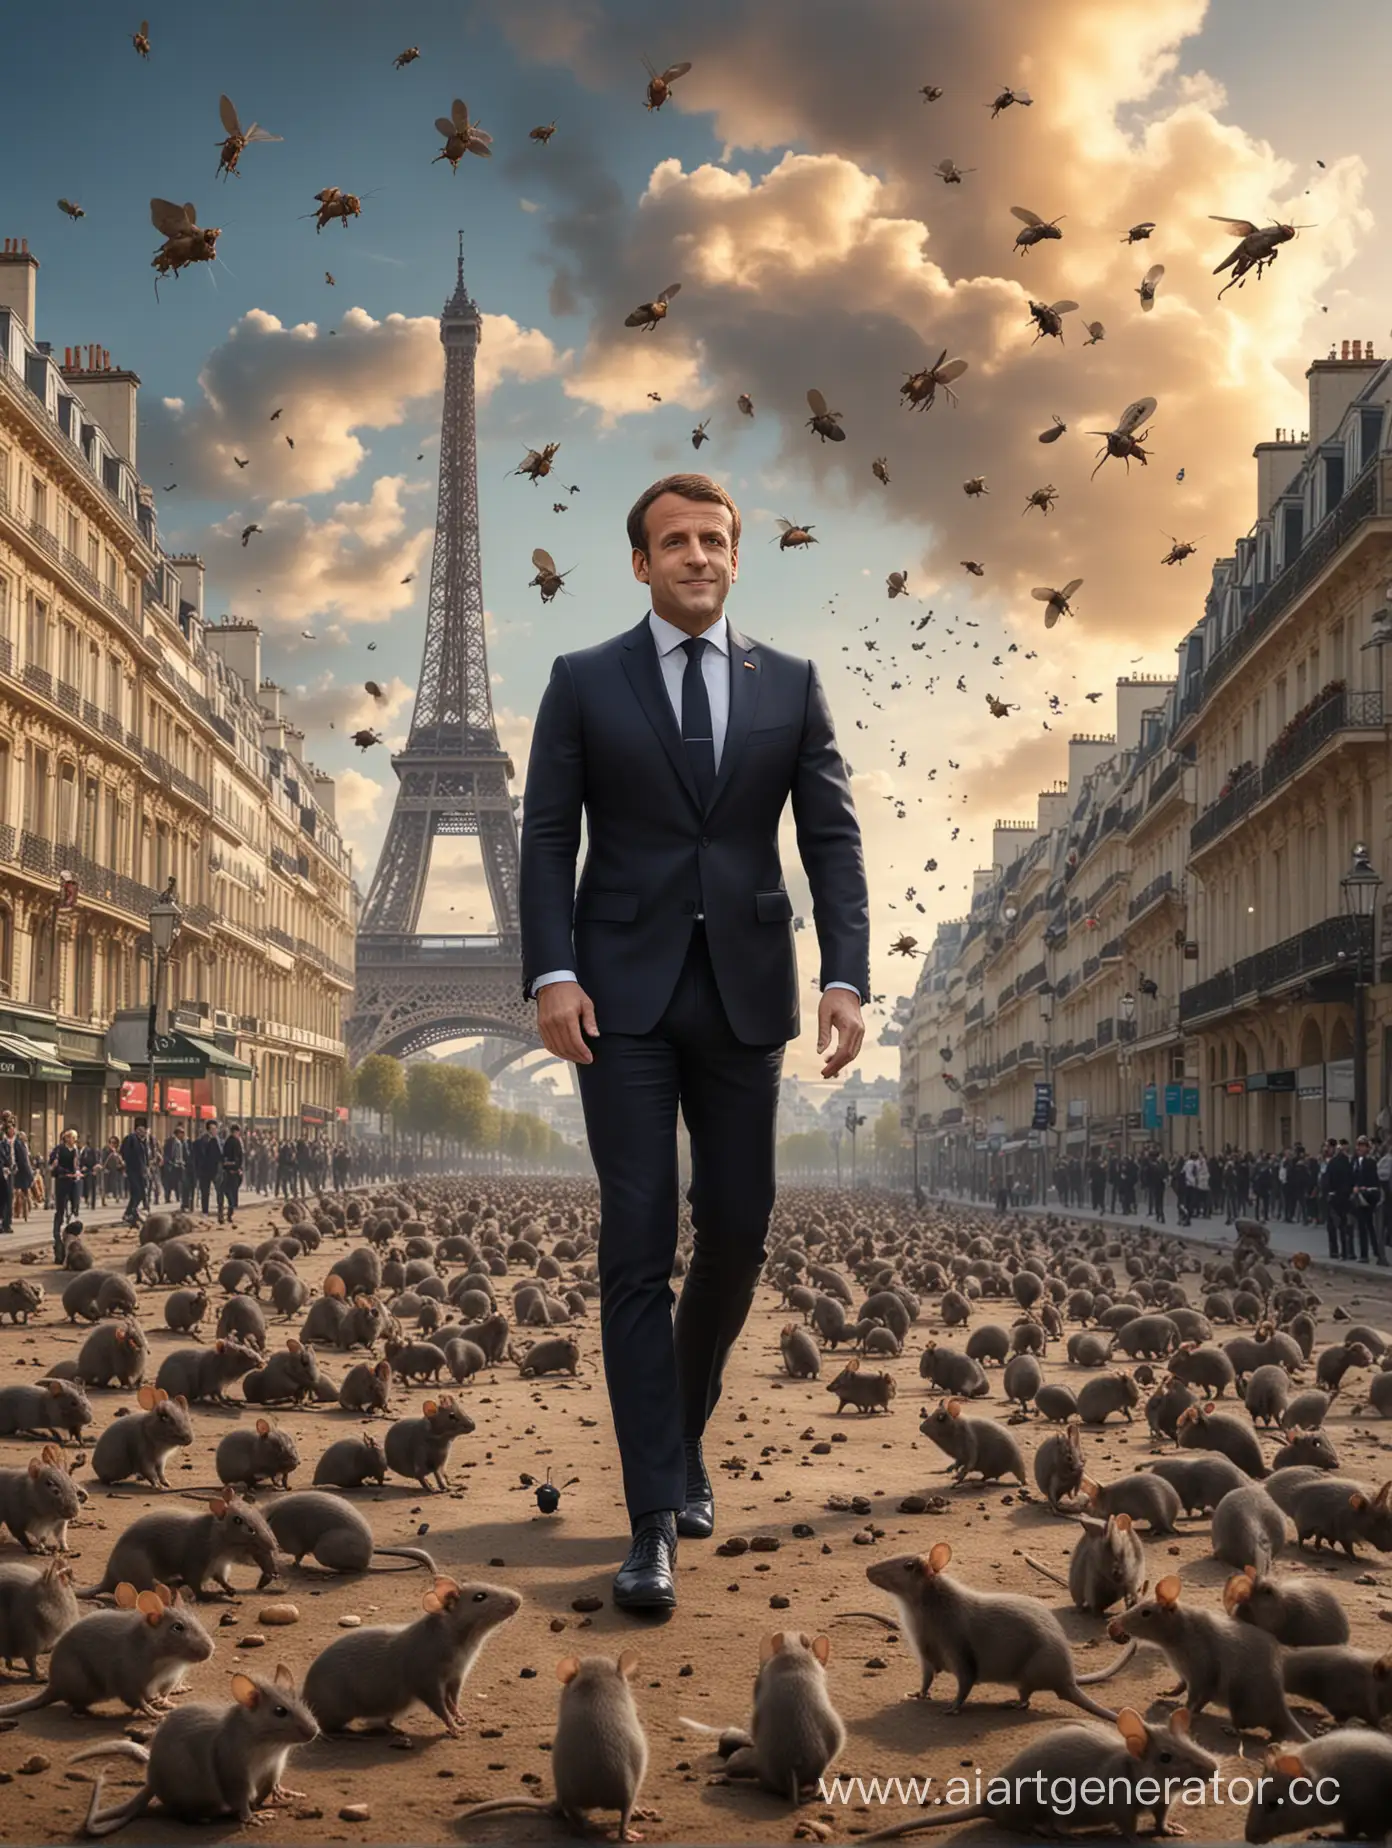 Президент Макрок в Париже приглашает всех на Олимпиаду, вокруг много крыс и клопов, а в небе пролетают ракеты. Реалистичное фото.